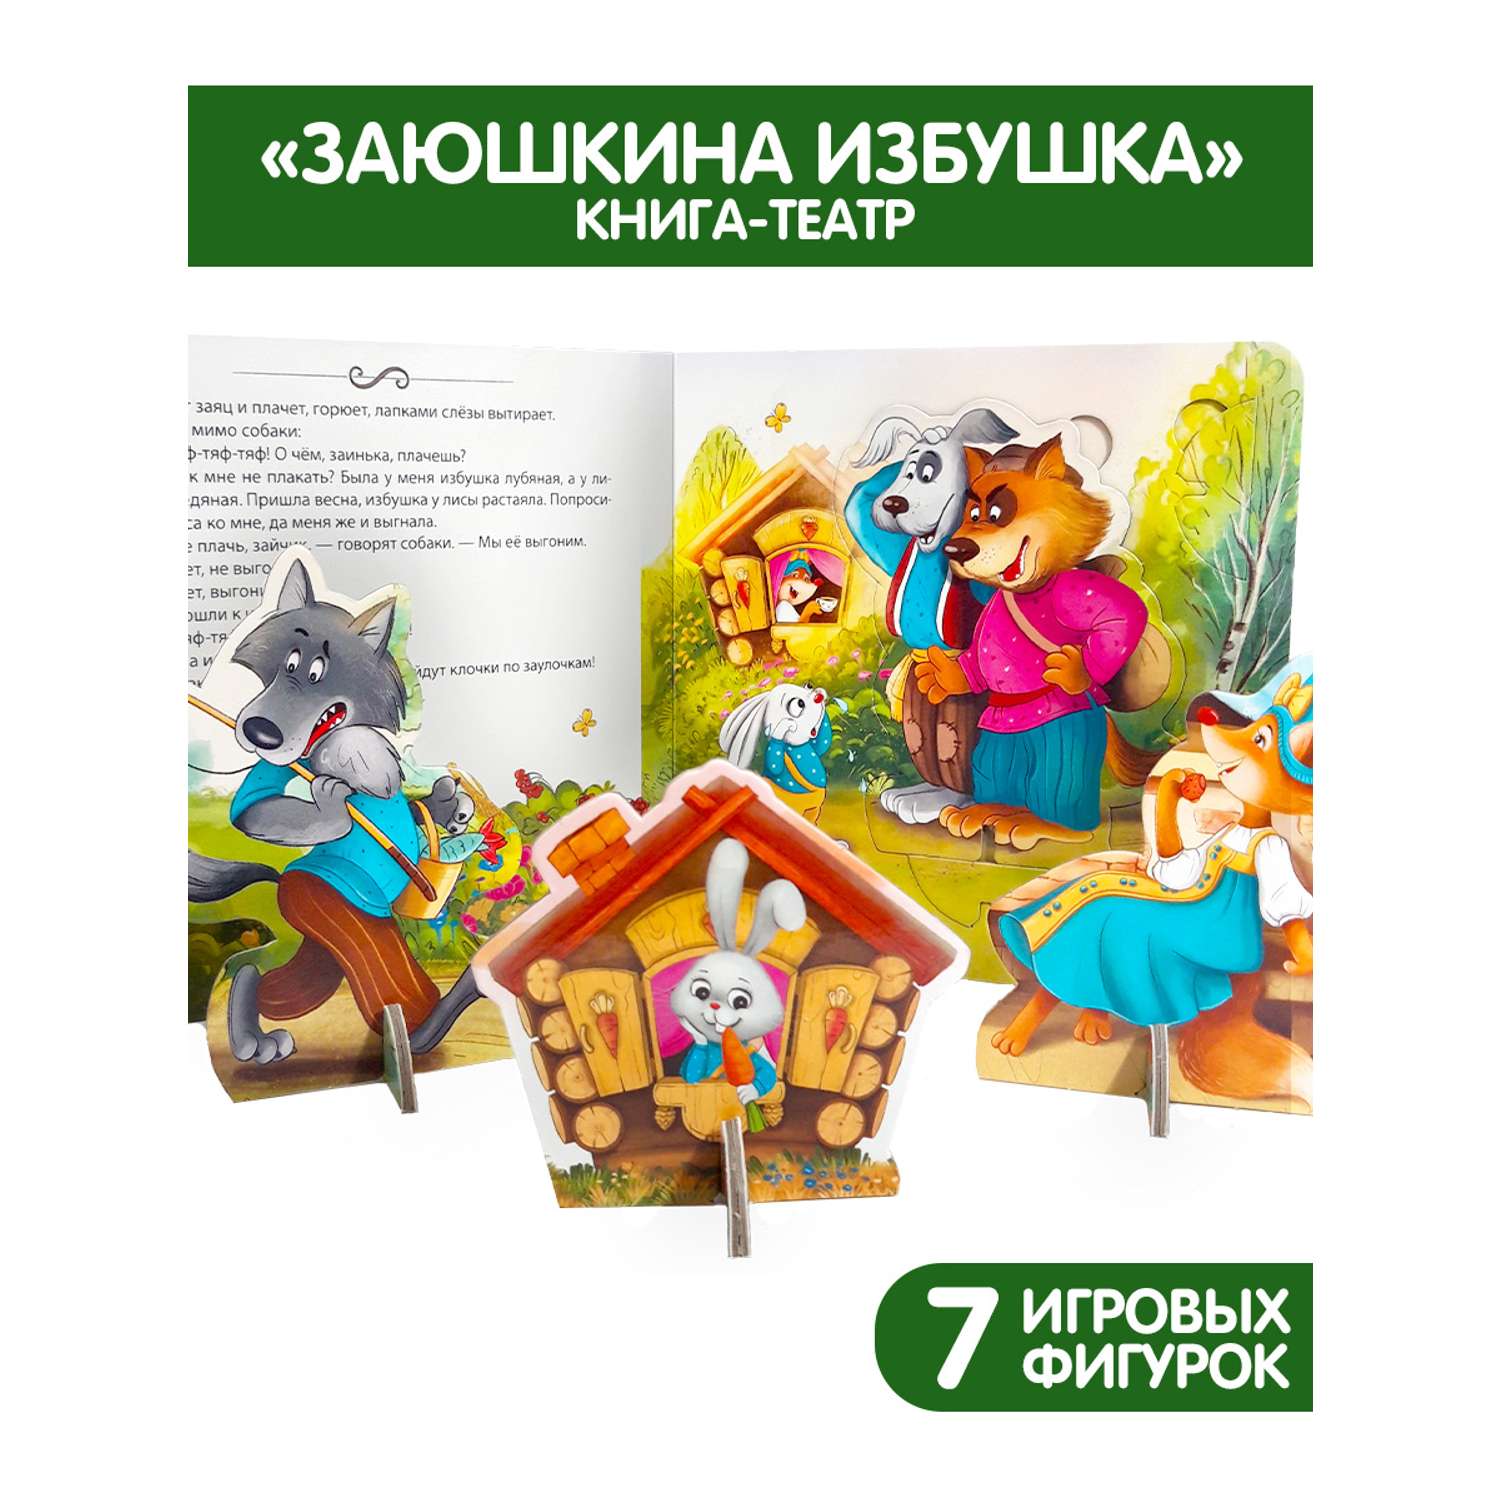 Книга Malamalama Театр Сказки для детей Заюшкина избушка - фото 2